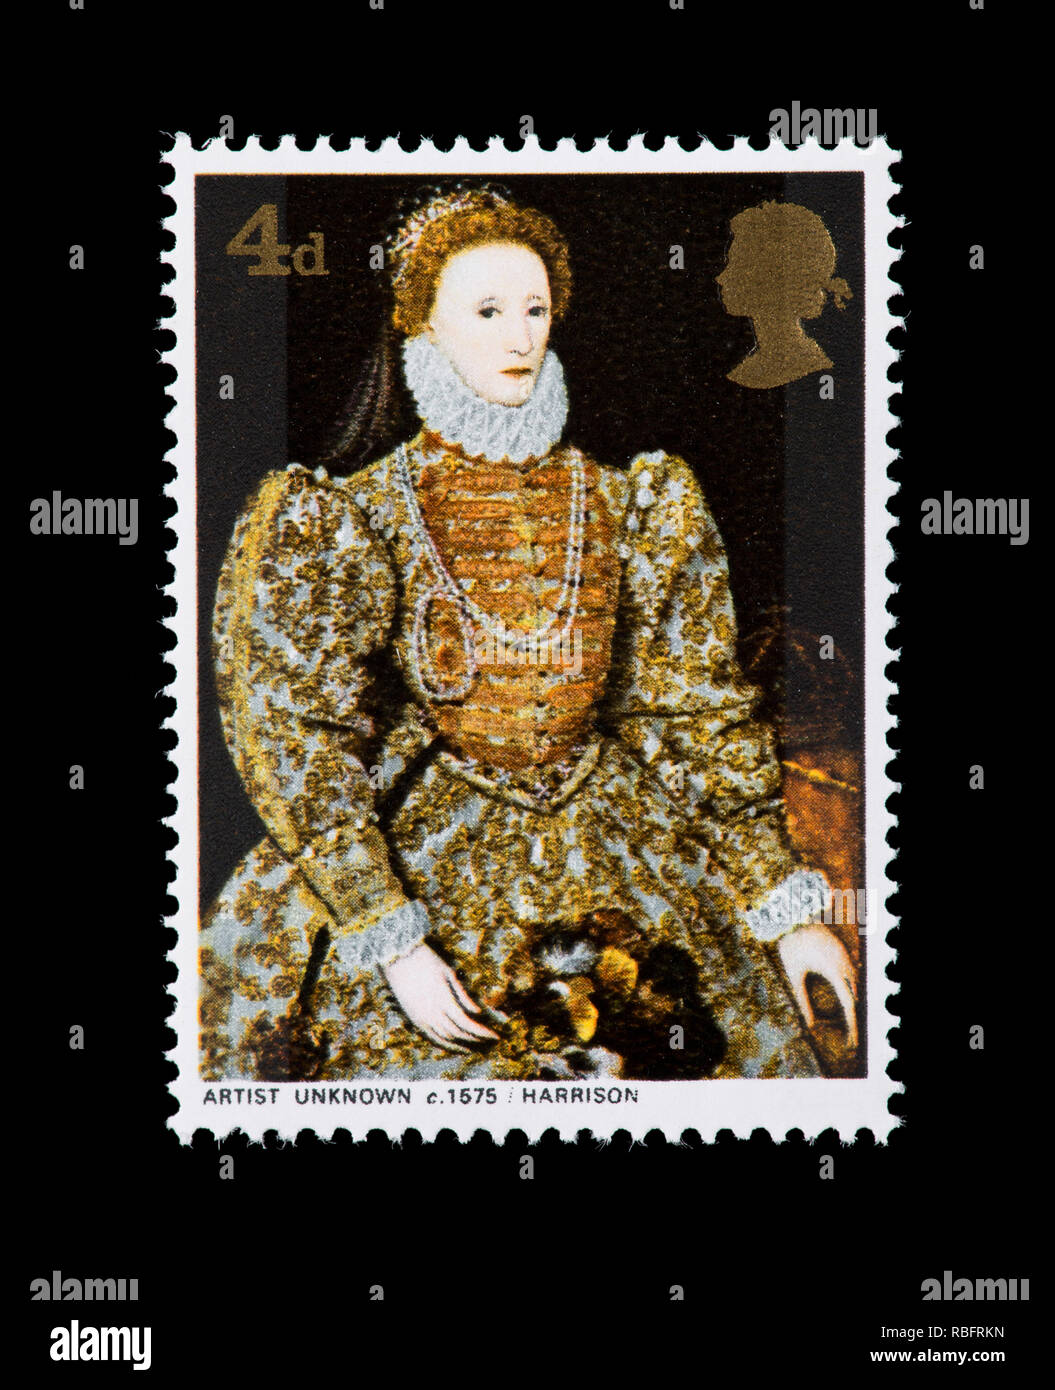 Timbre-poste à partir de la Grande-Bretagne représentant une peinture de la Reine Elizabeth I, vers 1575. Banque D'Images